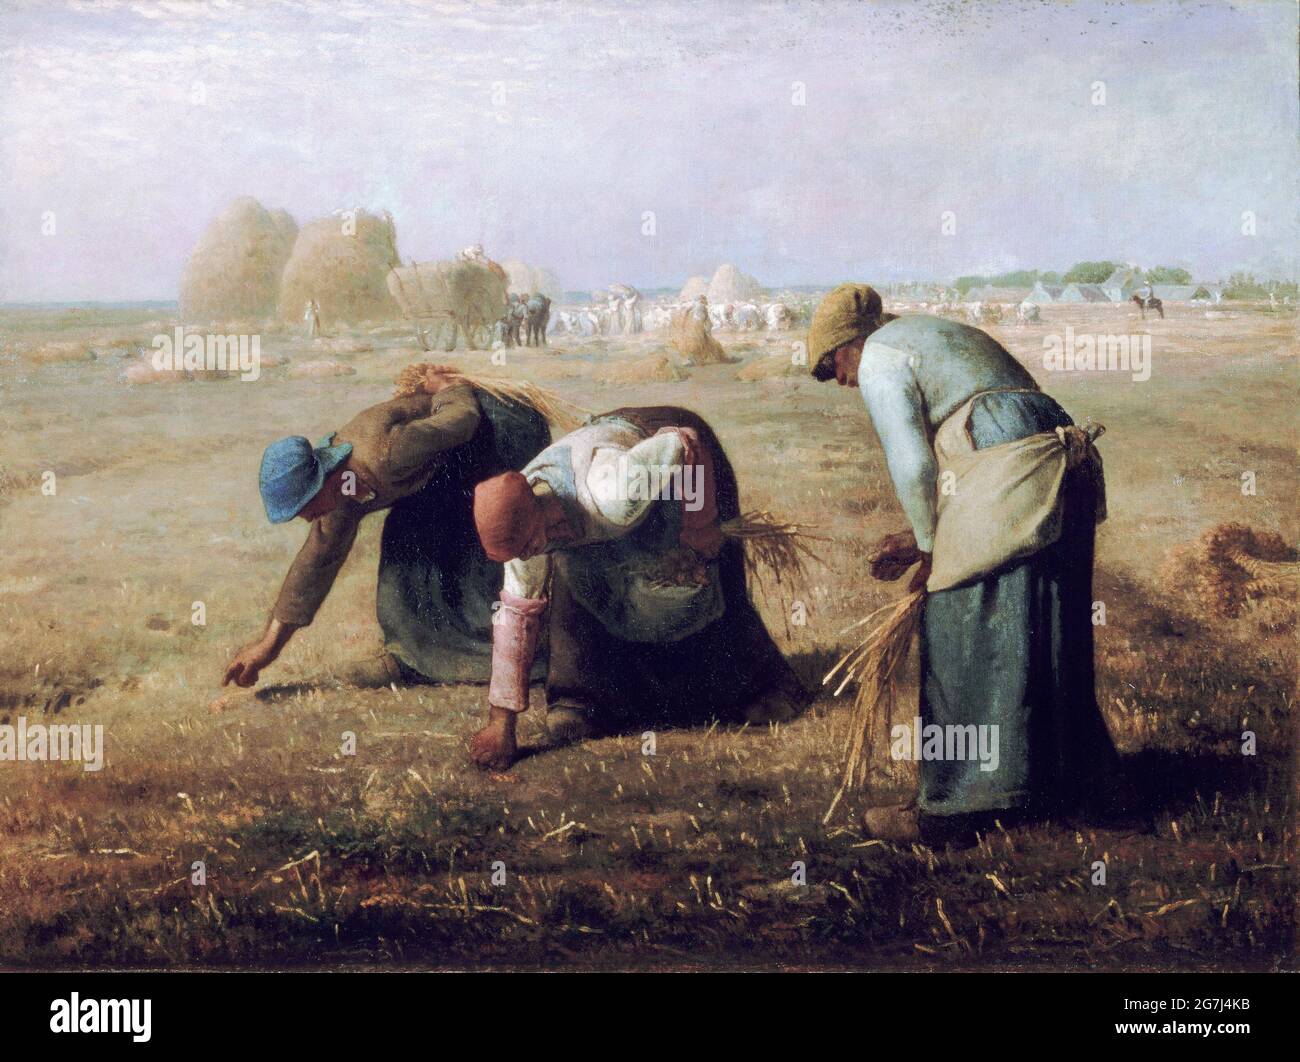 Gleaners par Jean-François Millet (1814-1875), huile sur toile, 1857 Banque D'Images